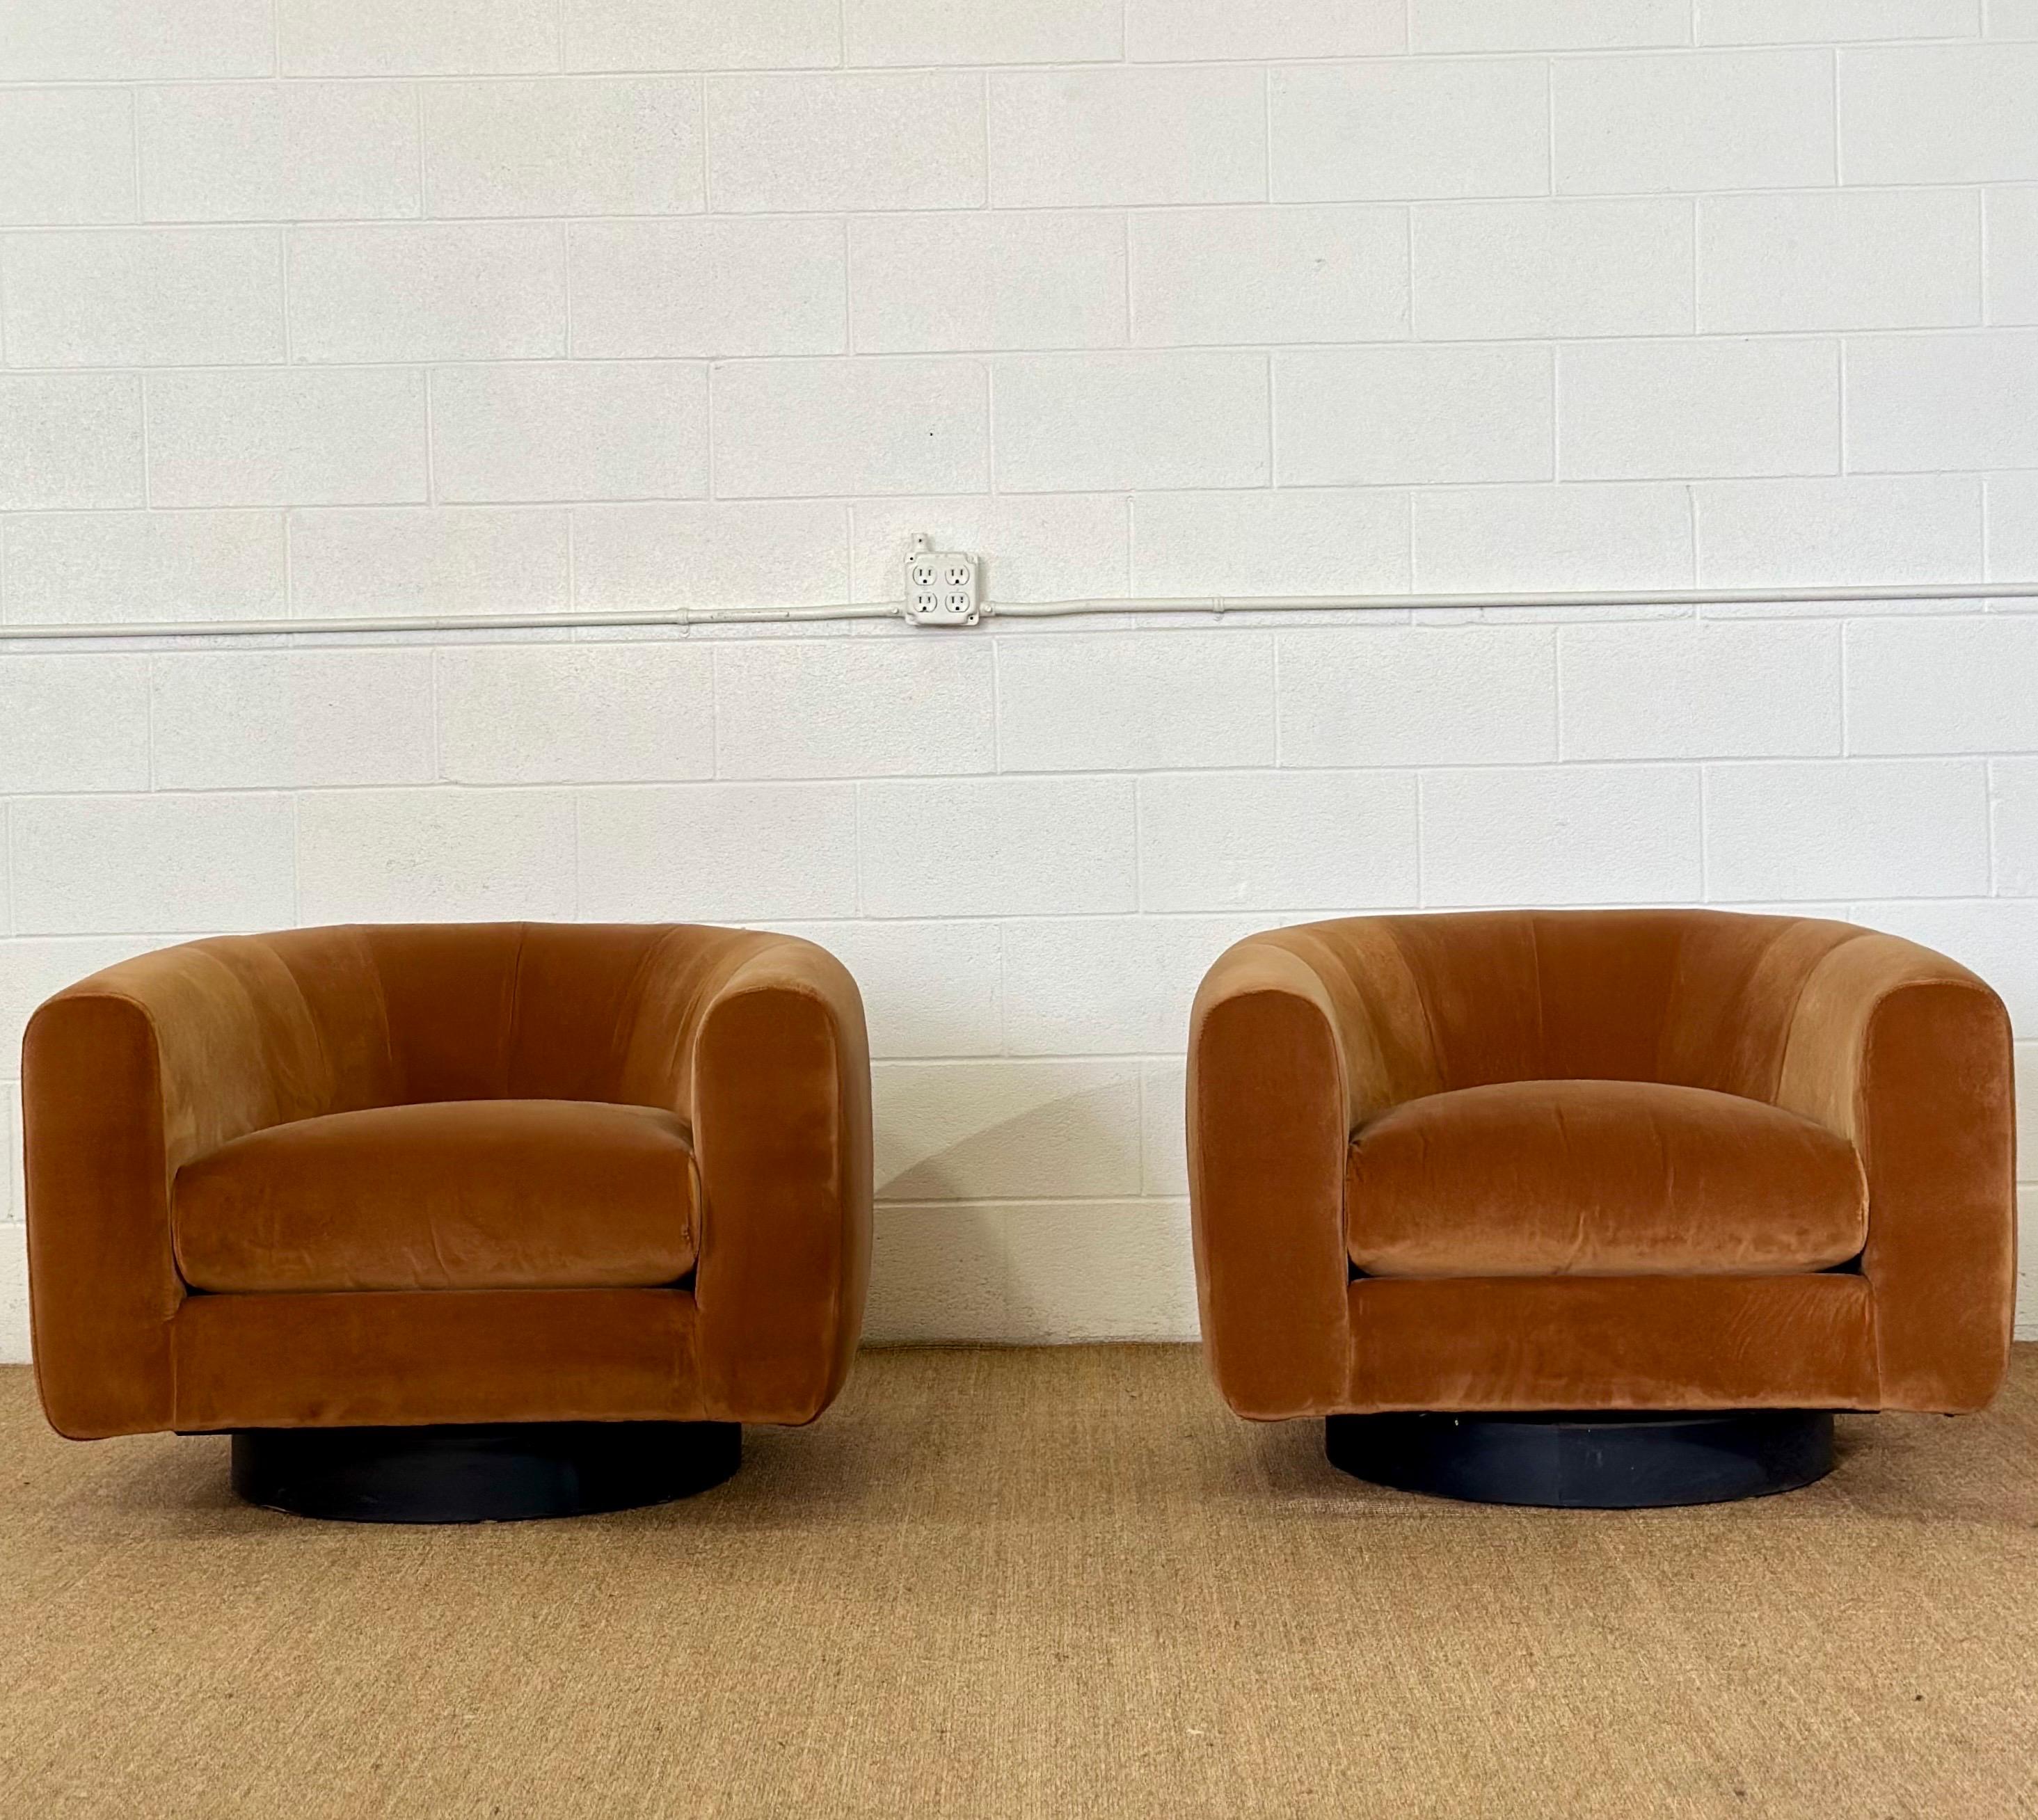 Nous avons le plaisir de vous proposer une superbe paire de chaises à dossier en tonneau dans le style de Milo Baughman, vers les années 1970.  Chaque chaise exquise est ancrée sur un élégant socle en bois noir, donnant l'illusion que la chaise